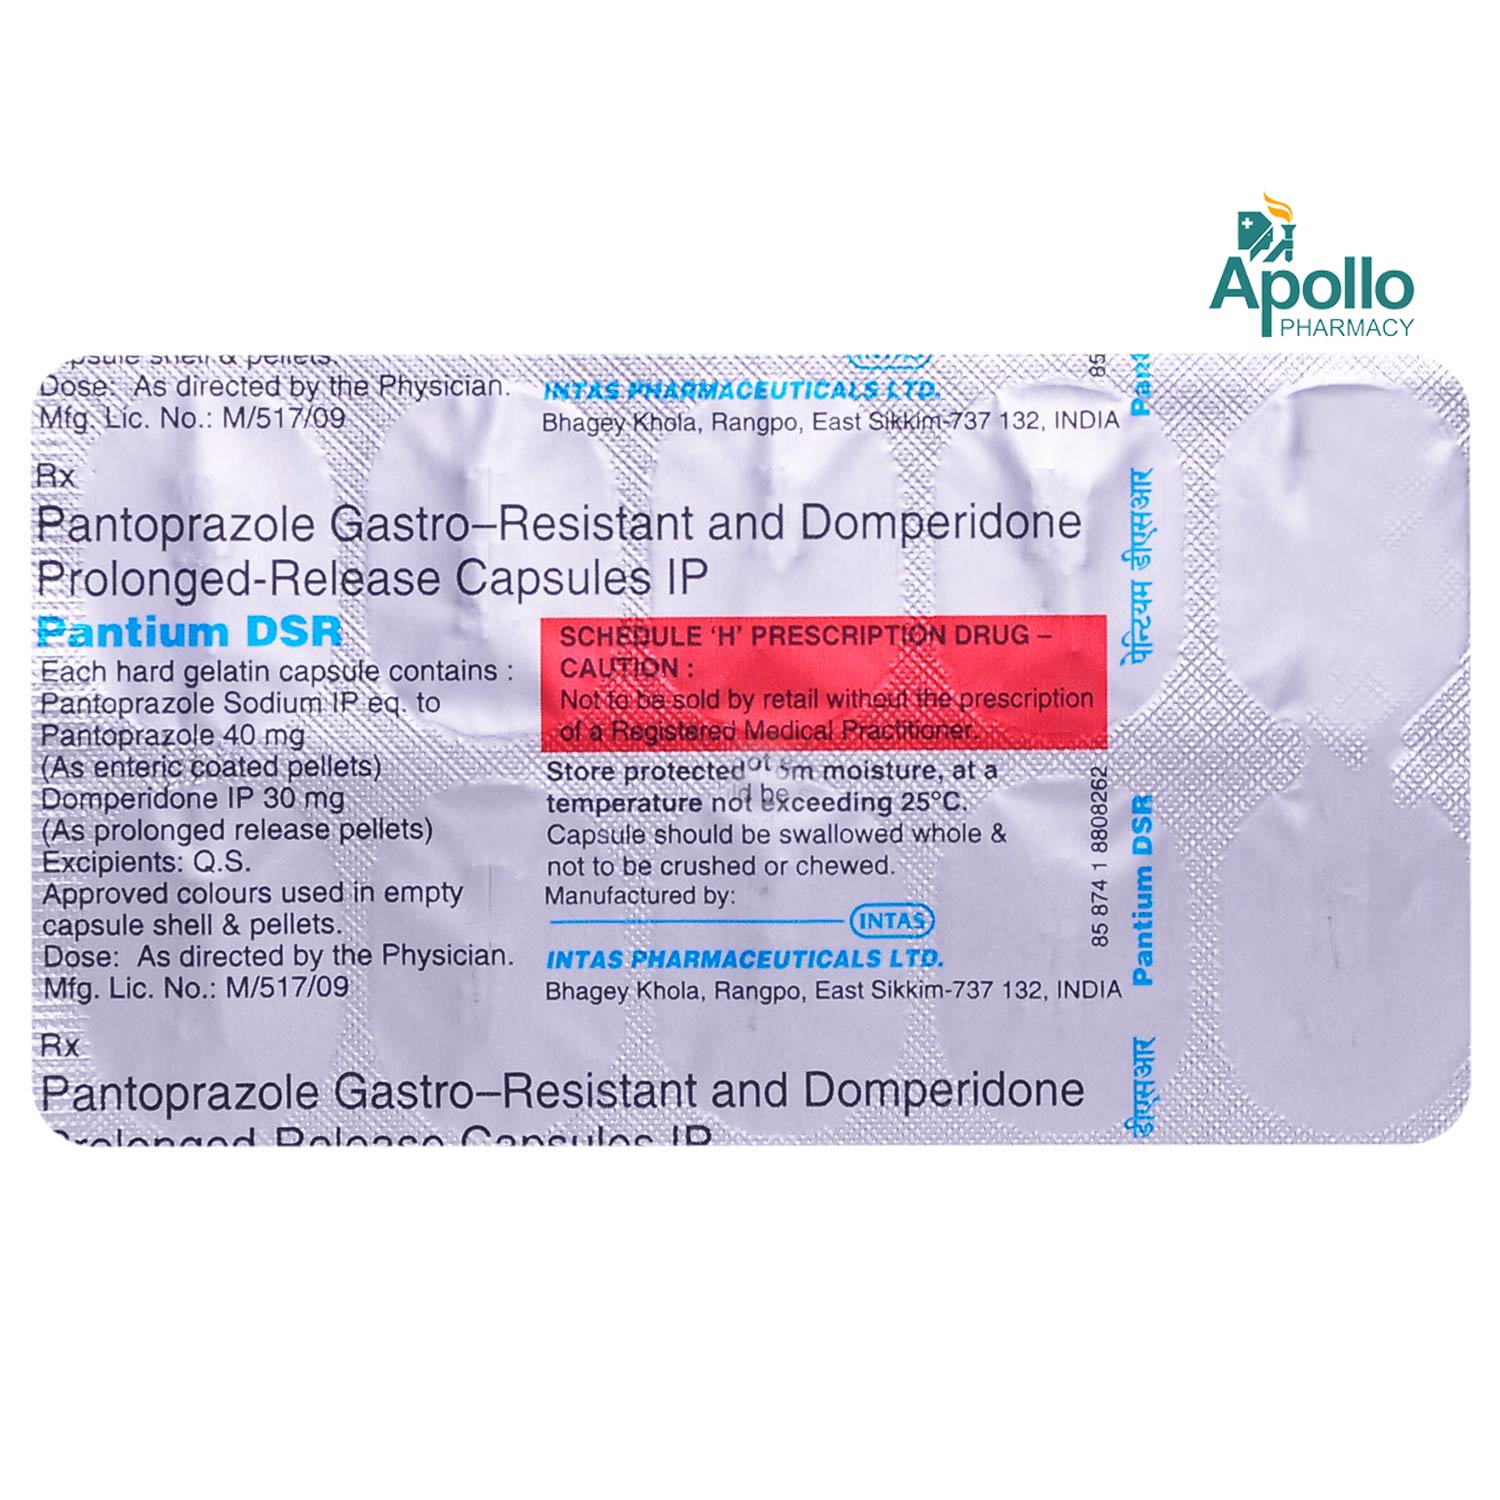 Pantium DSR Capsule 10's, Pack of 10 CAPSULES